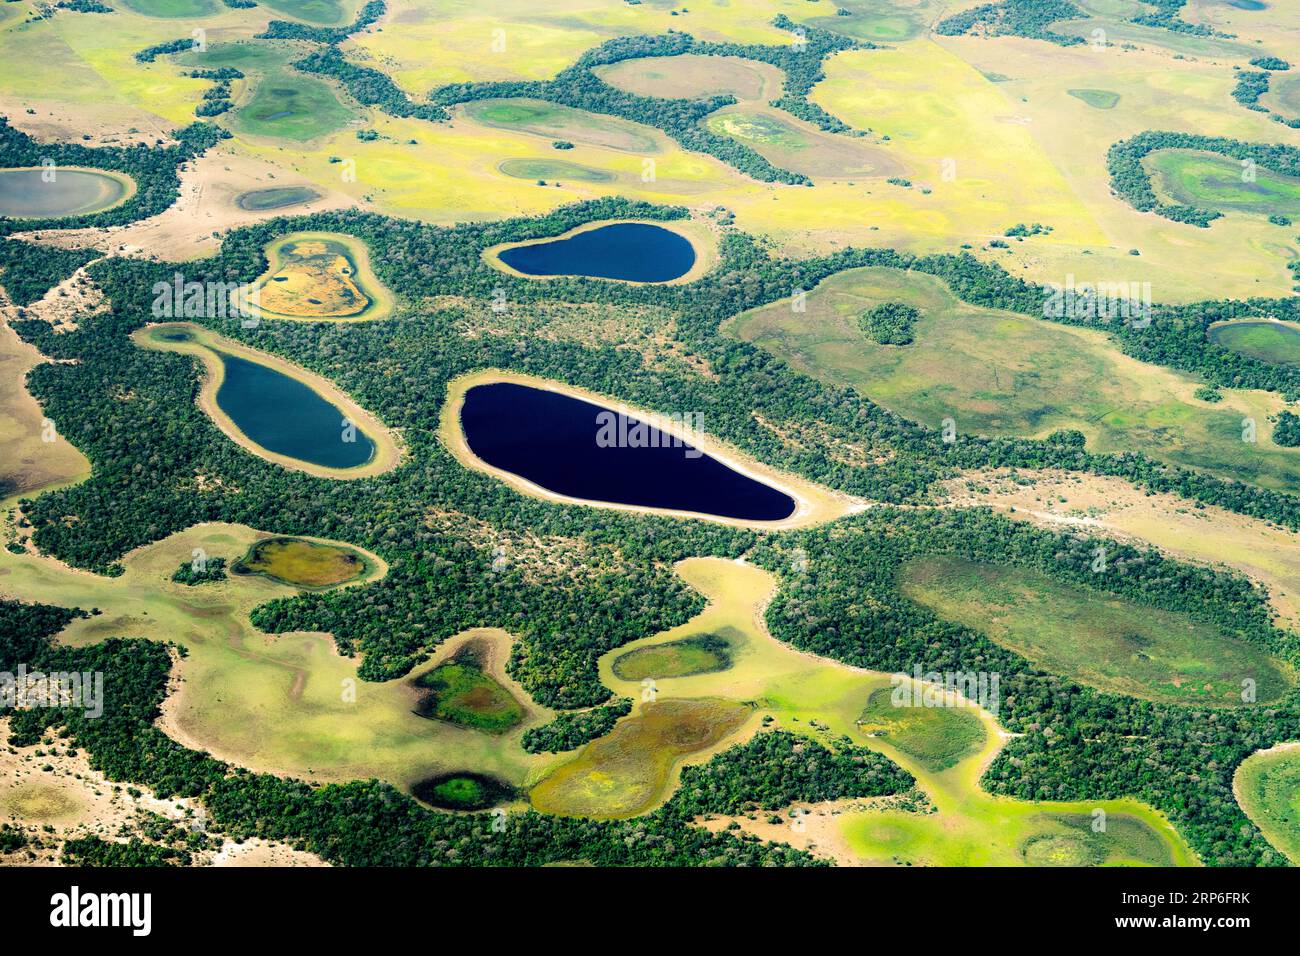 Saison sèche dans la région de Nhecolandia dans l'état du Mato Grosso, Brésil. Banque D'Images